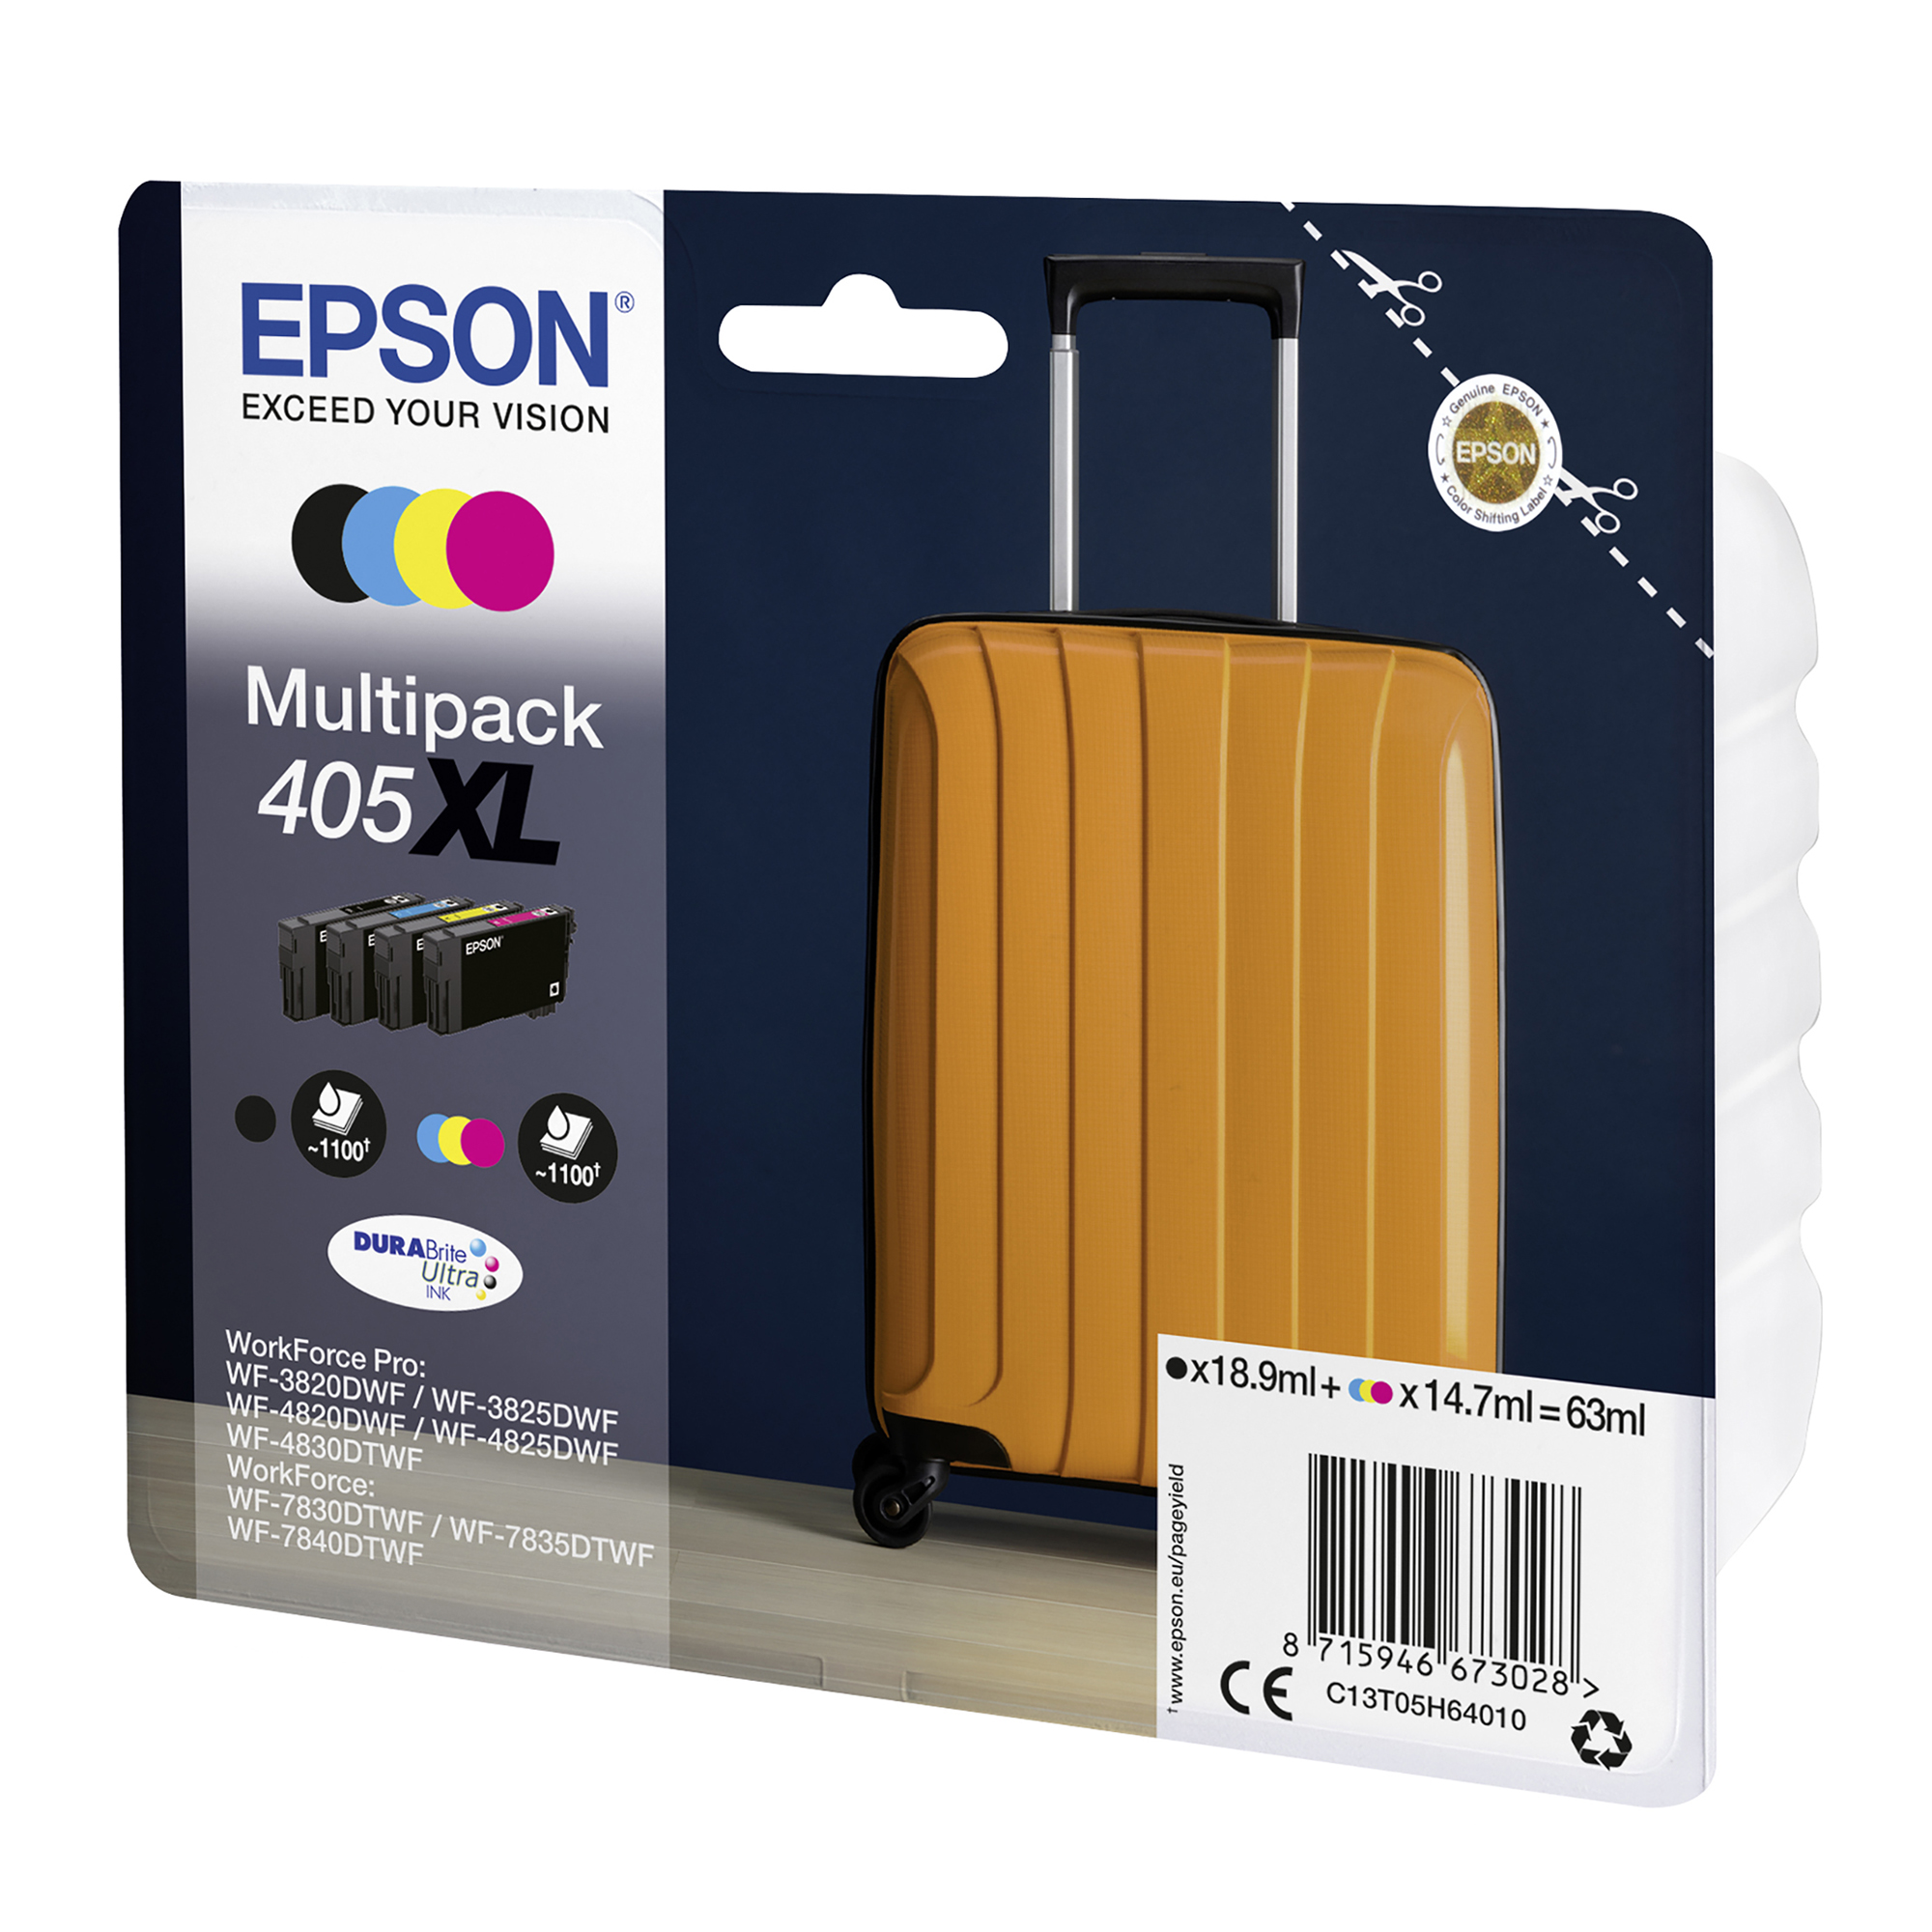 Epson Multipack 33XL Orange, Cartouches d'encre …